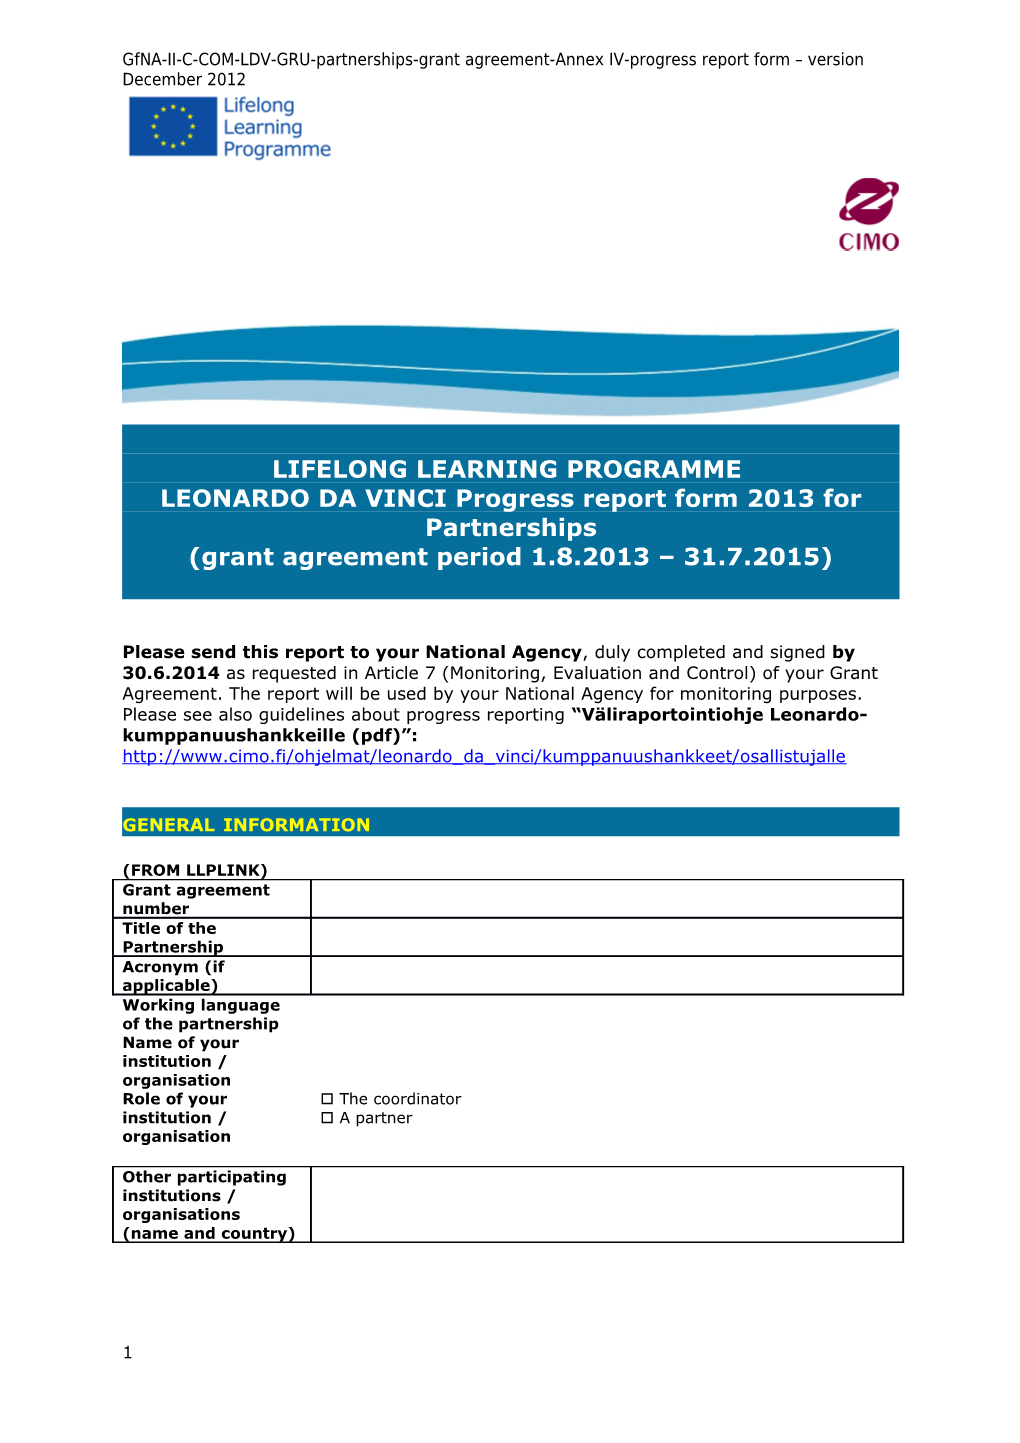 LEONARDO DA Vinciprogress Report Form 2013For